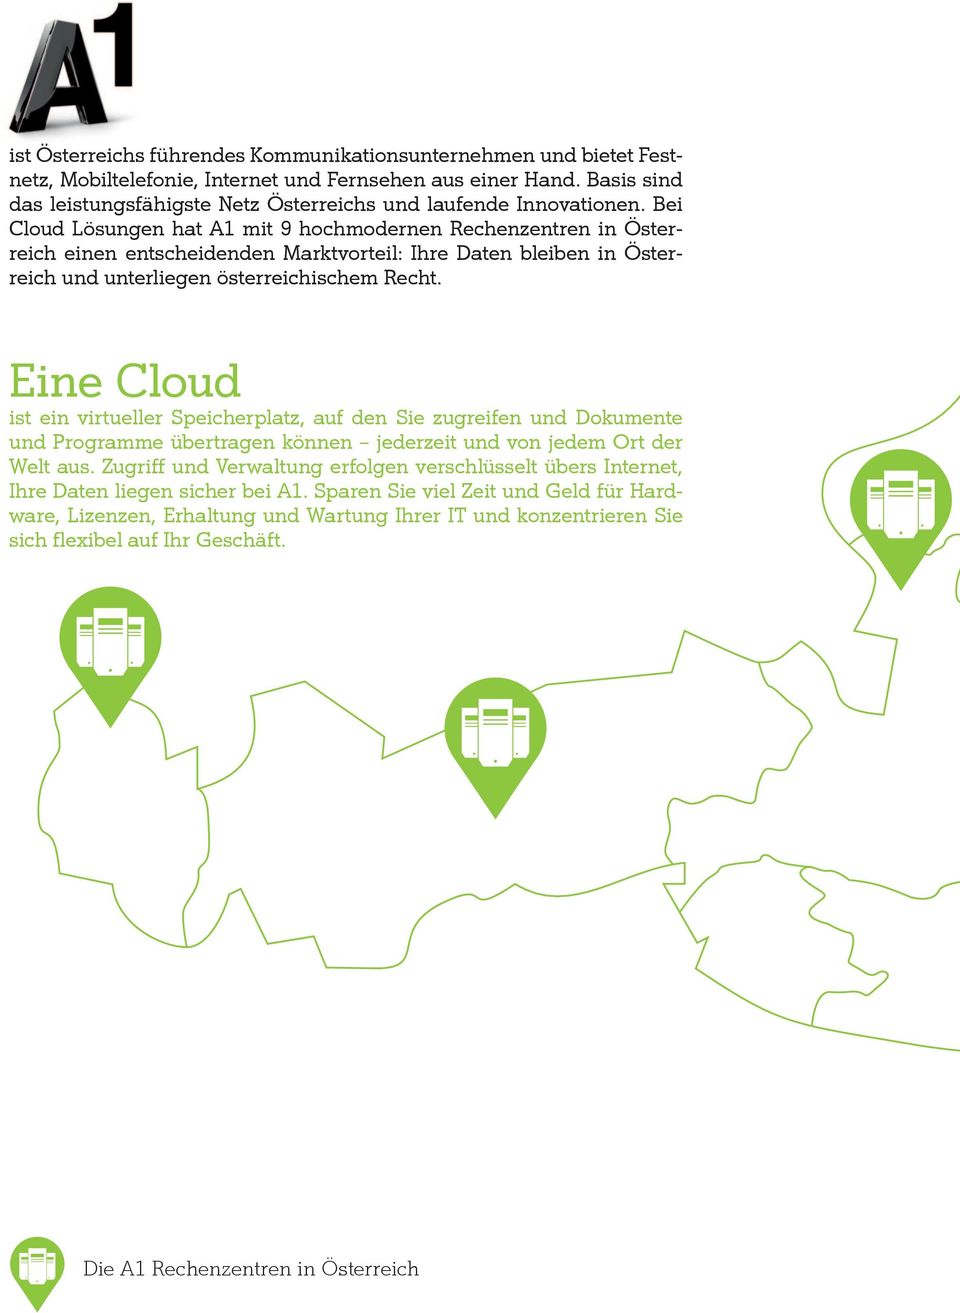 Bei Cloud Lösungen hat A1 mit 9 hochmodernen Rechenzentren in Österreich einen entscheidenden Marktvorteil: Ihre Daten bleiben in Österreich und unterliegen österreichischem Recht.